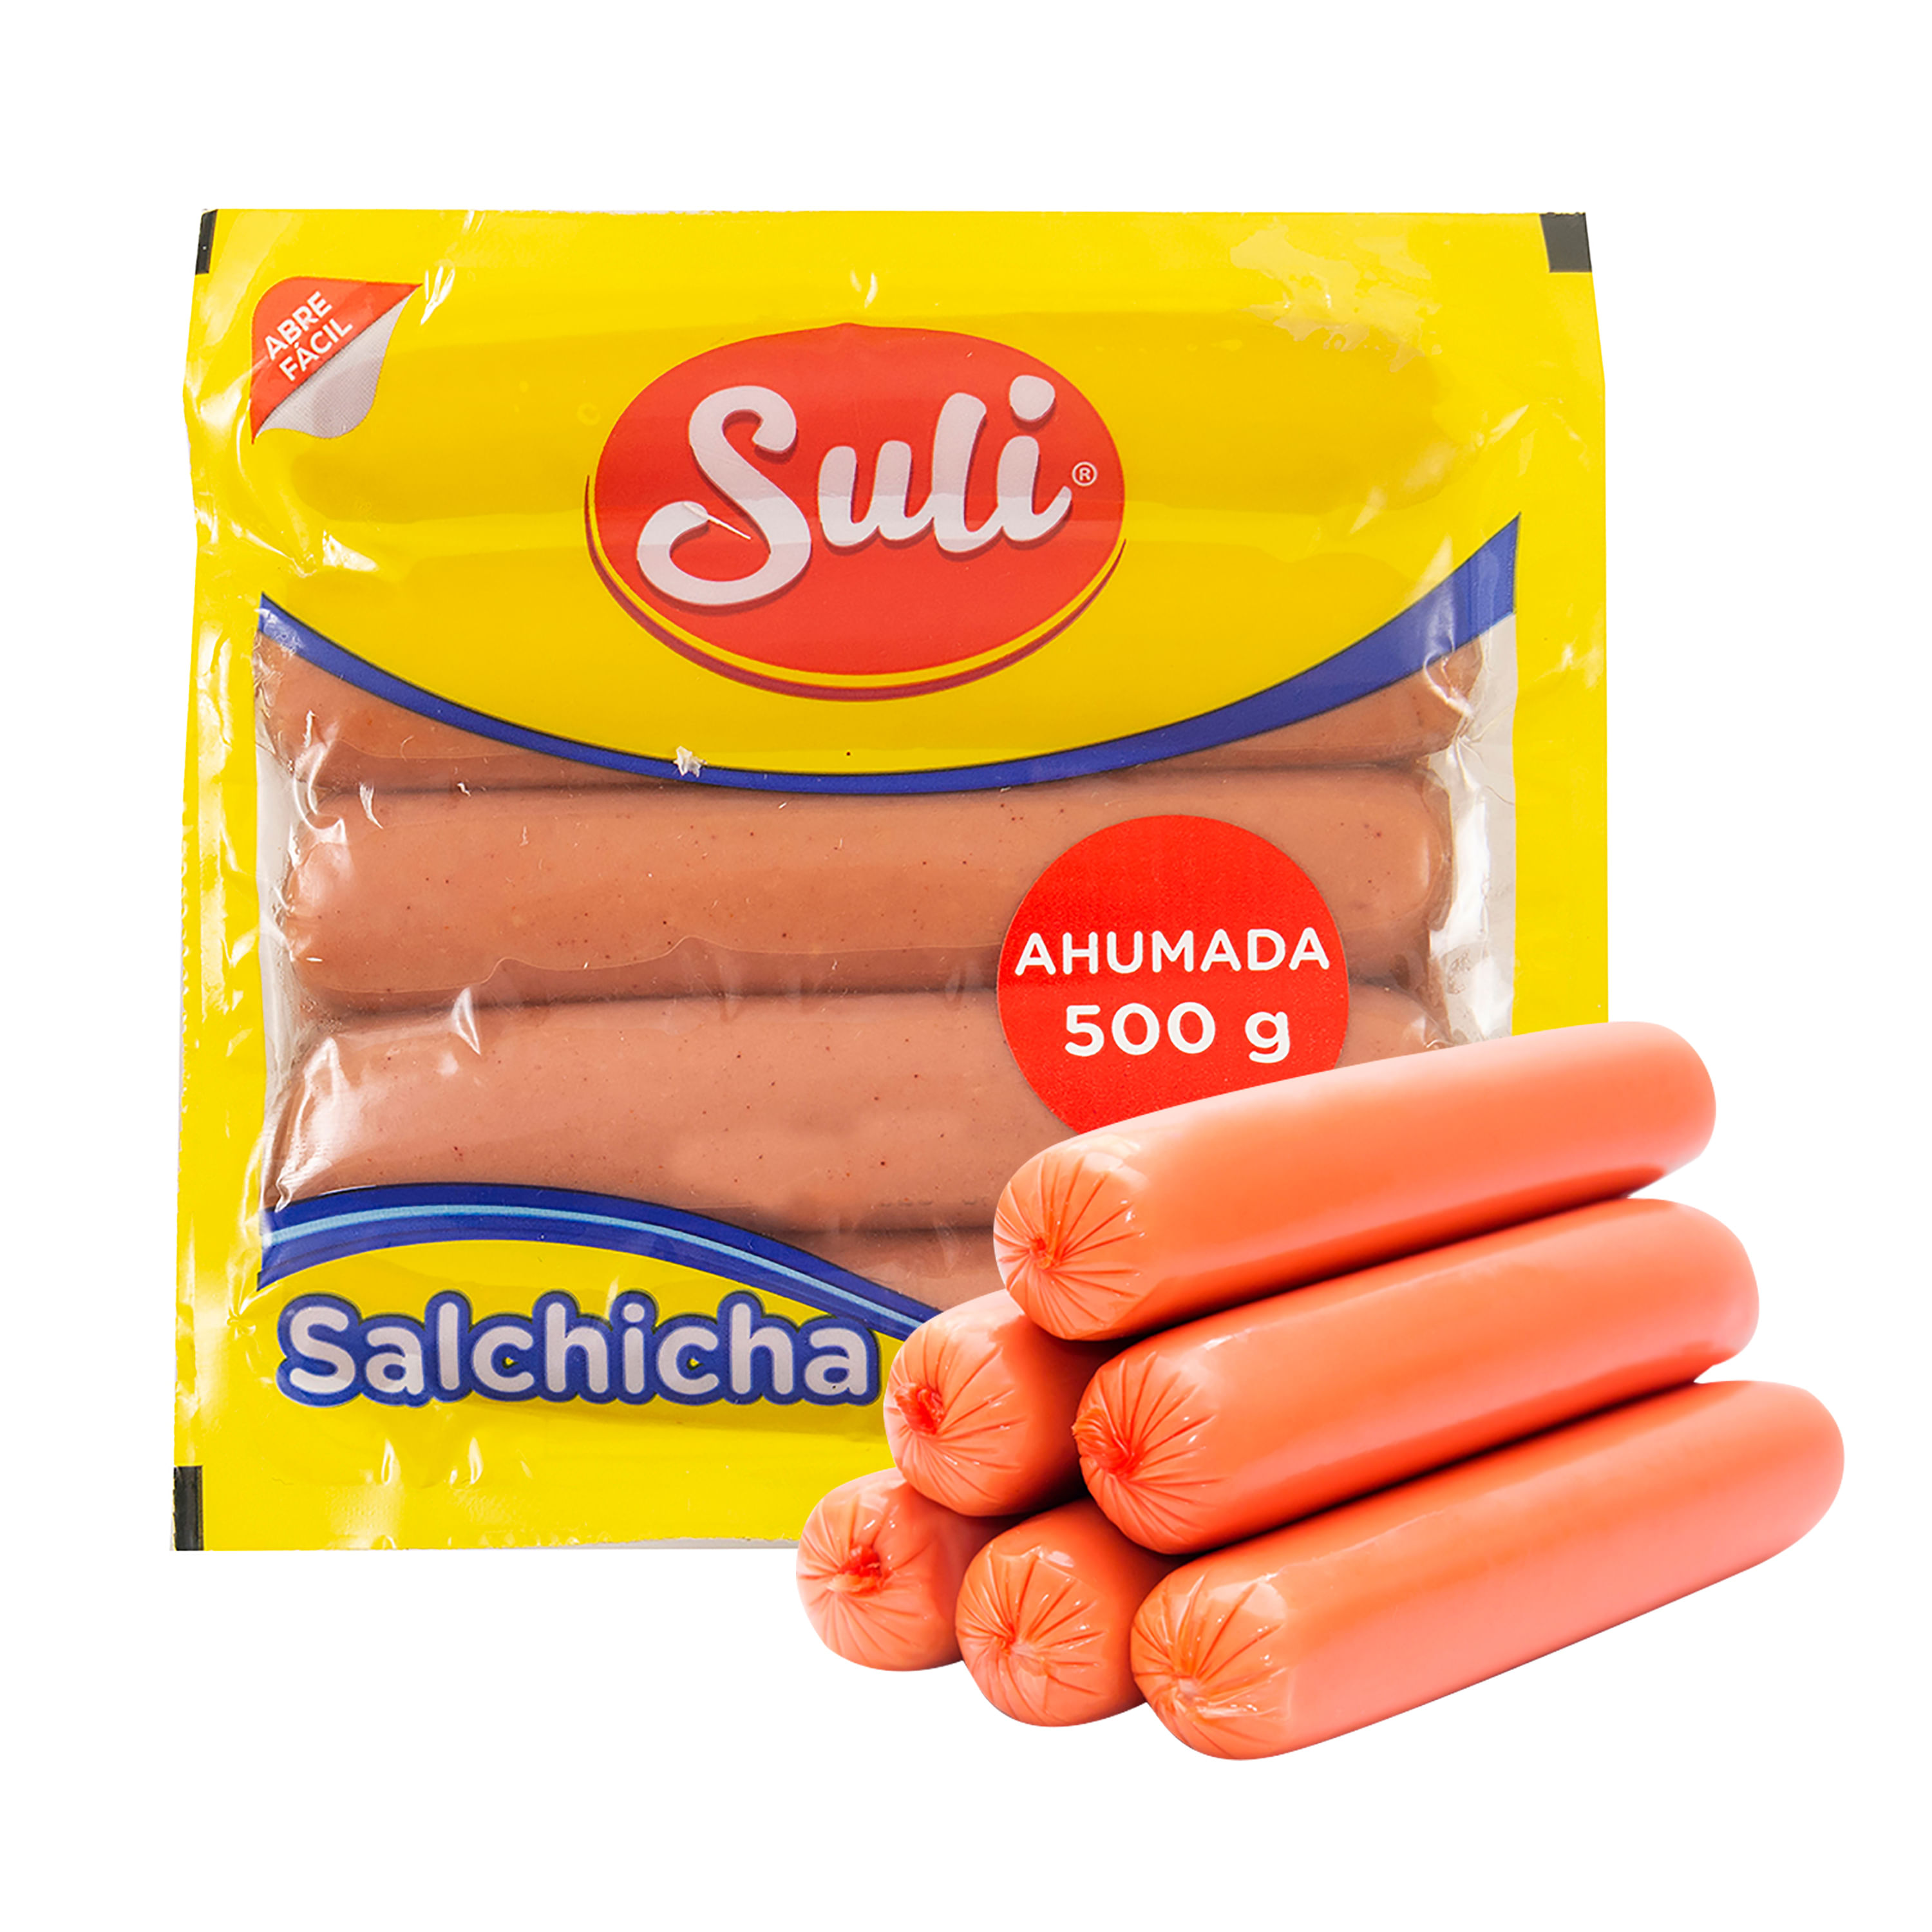 Salchicha-Ahumada-Suli-500G-1-67838